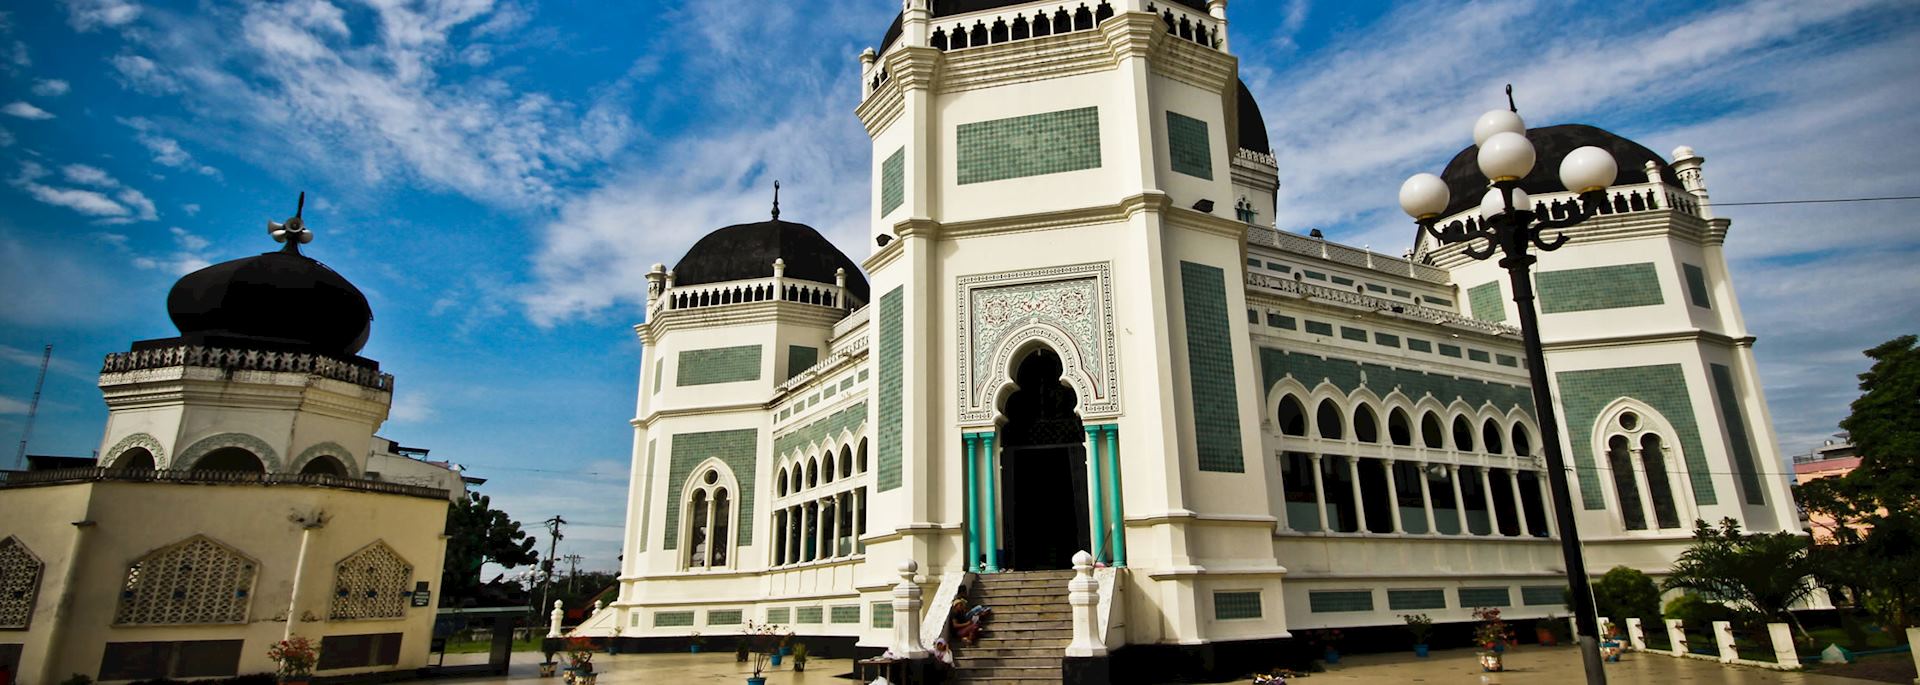 Masjid Raya Al Mashun mosque, Medan